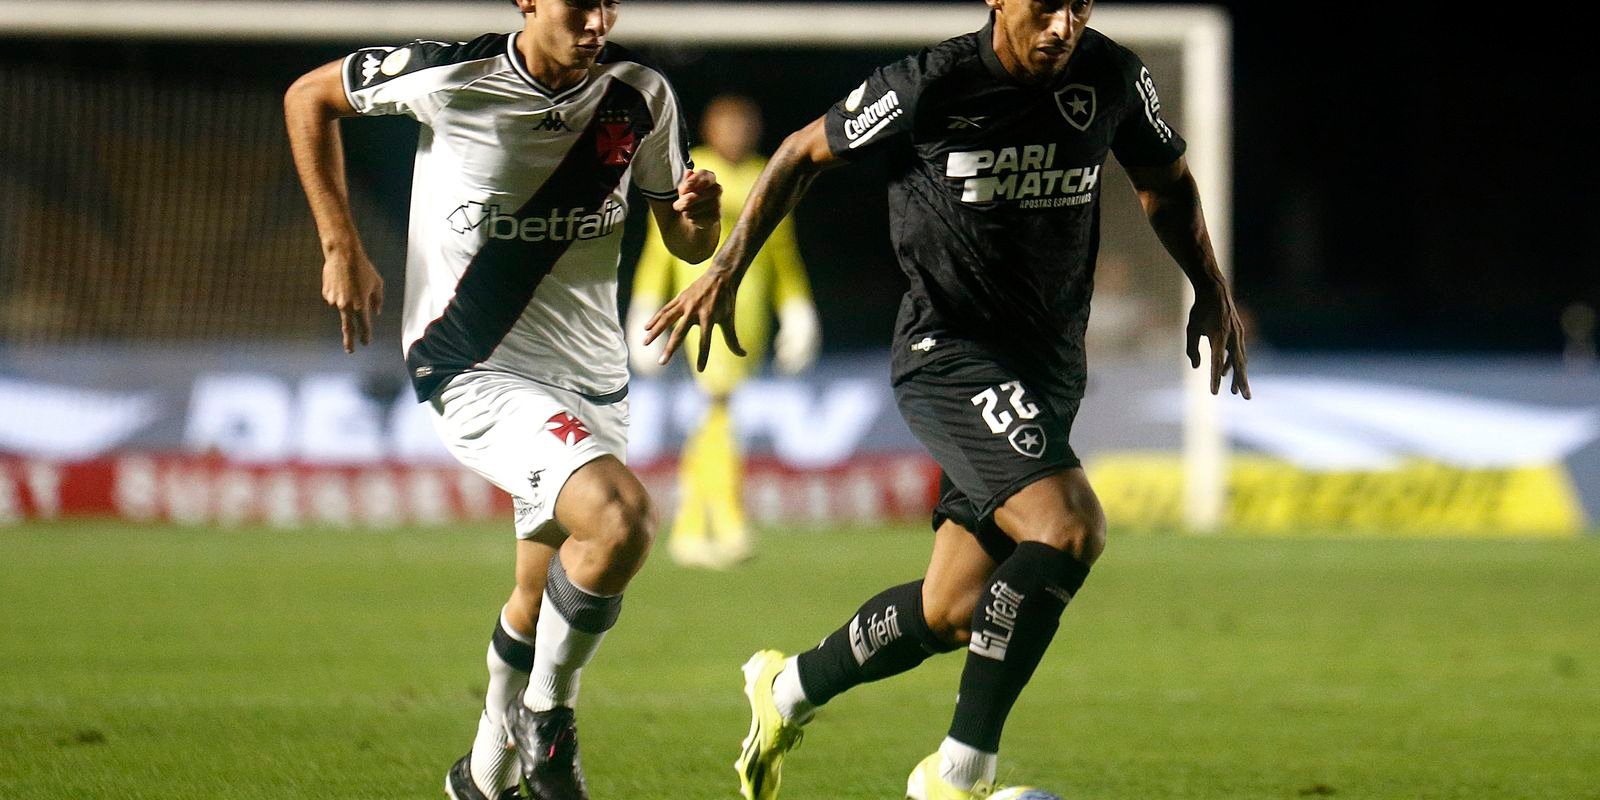 Vasco arranca empate com o Botafogo em São Januário